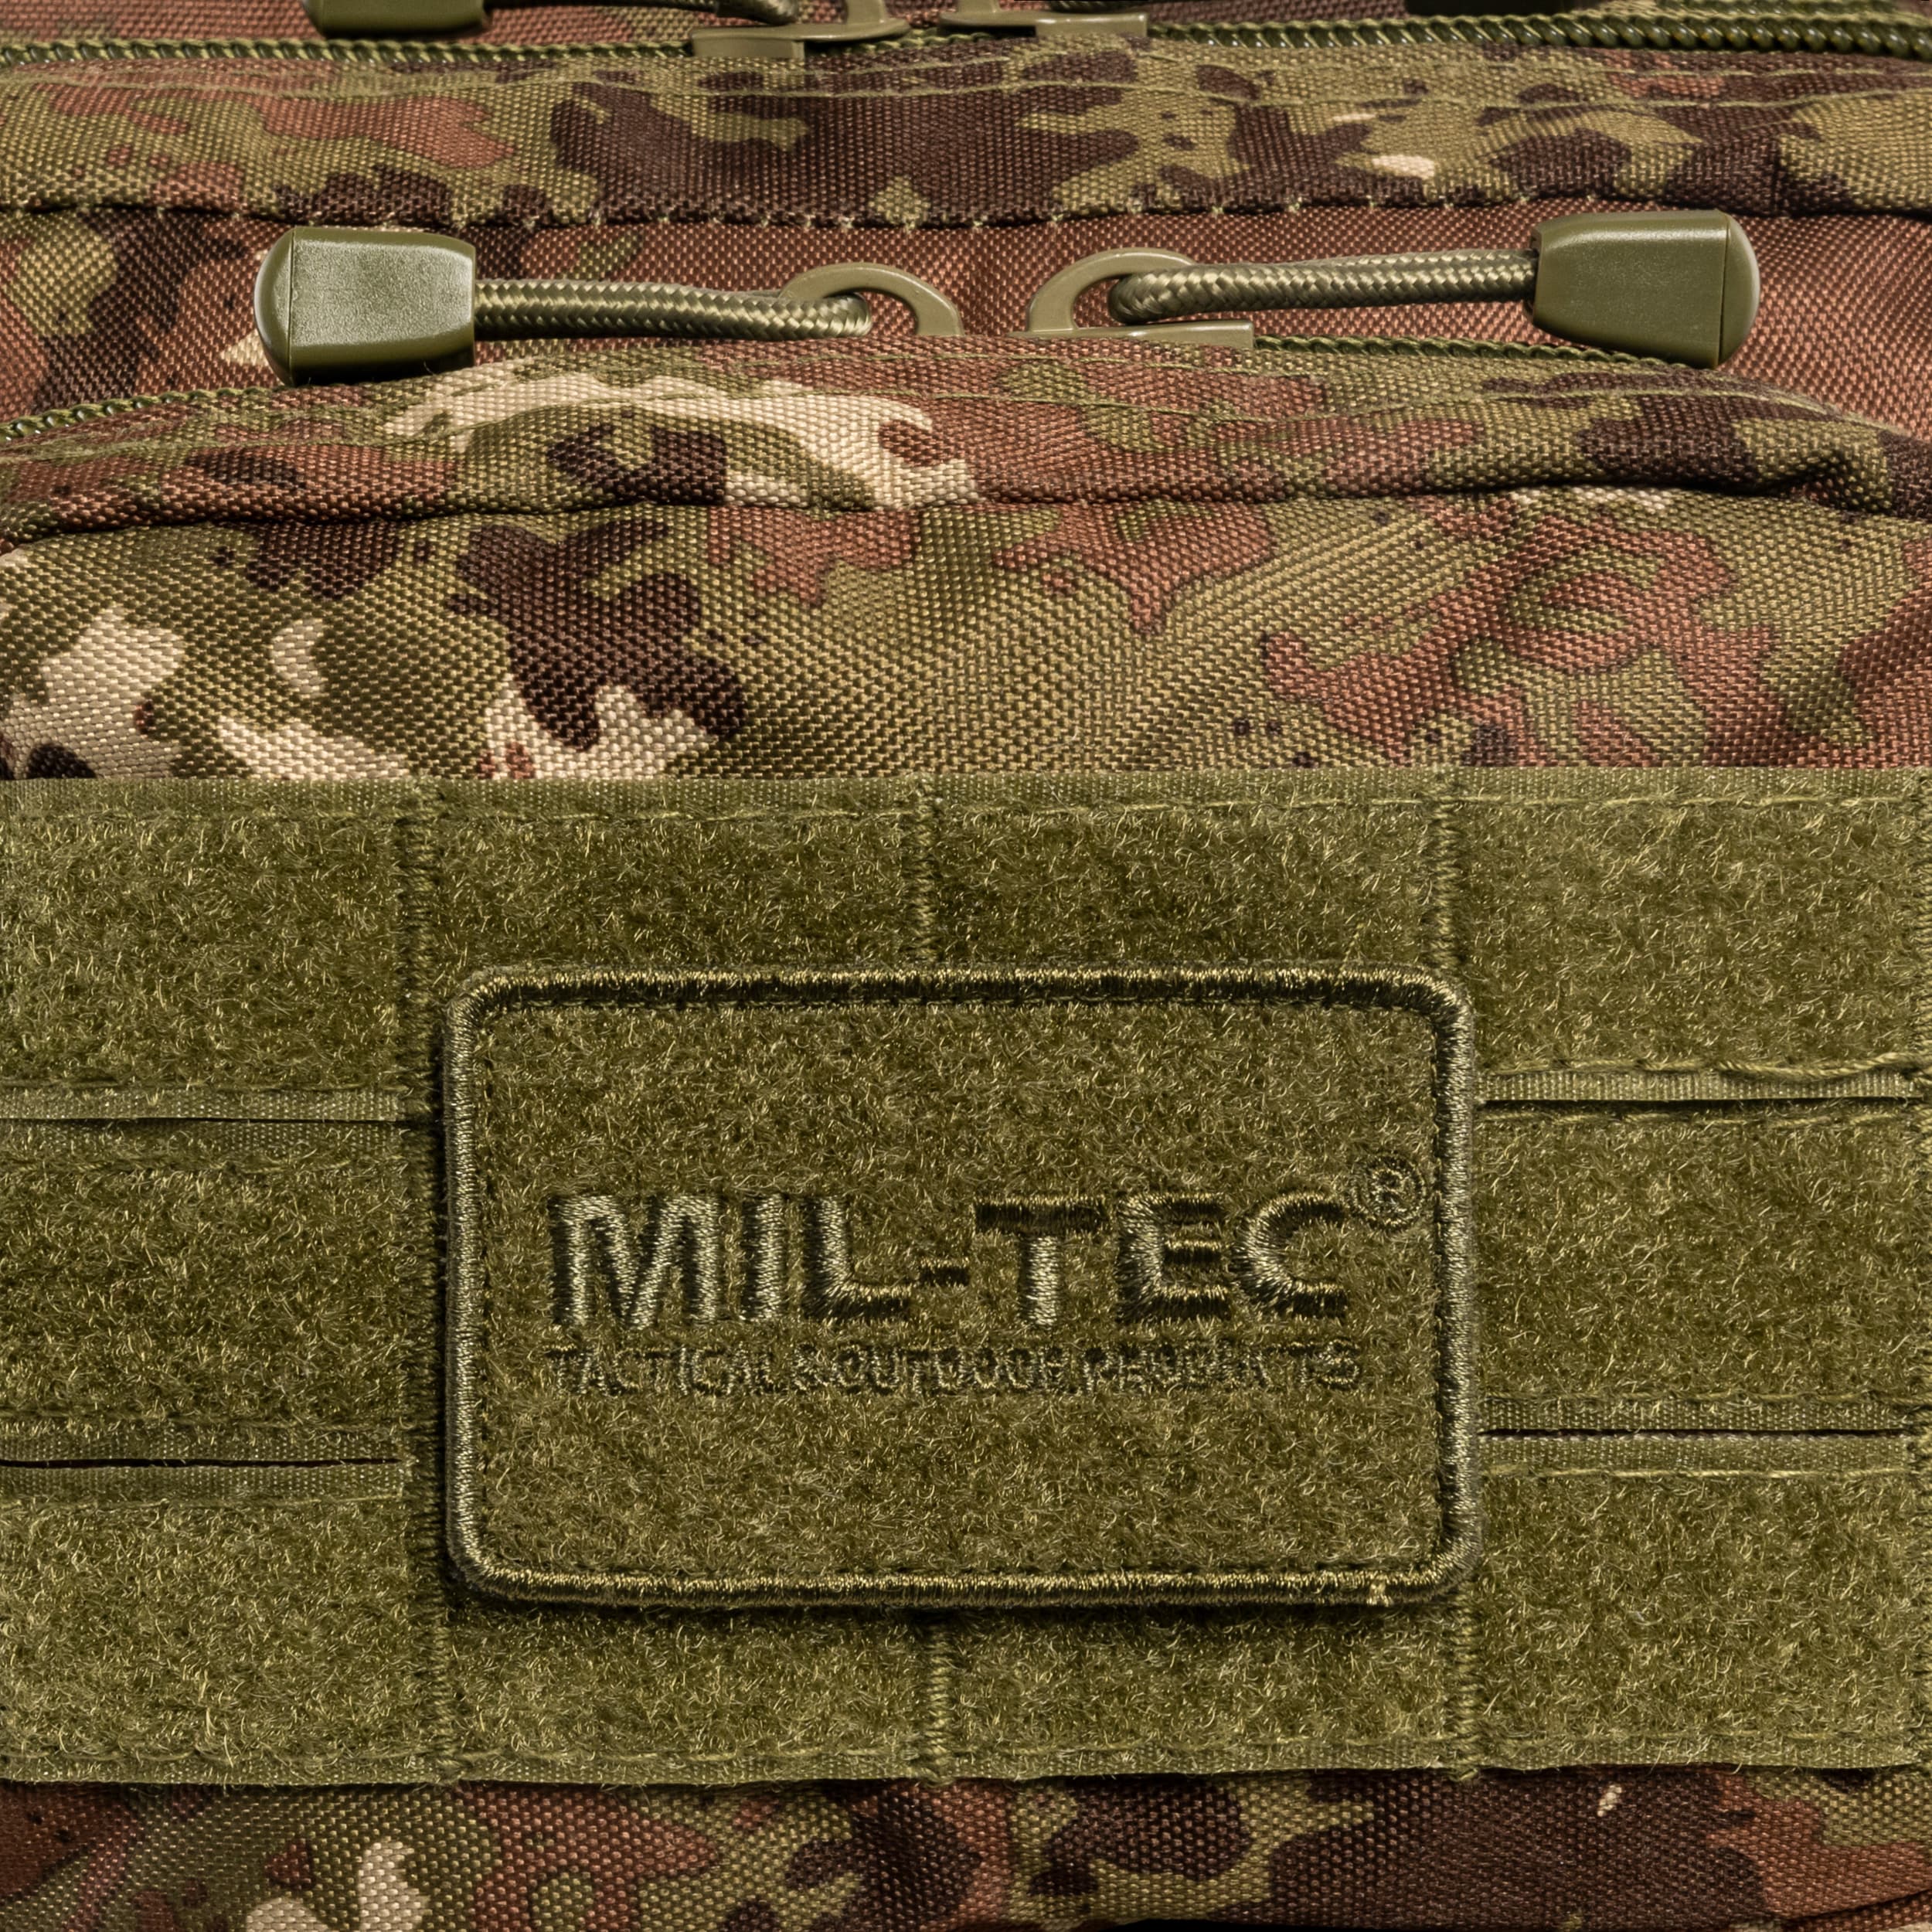 Plecak Mil-Tec Assault Pack Large 36 l - Vegetato